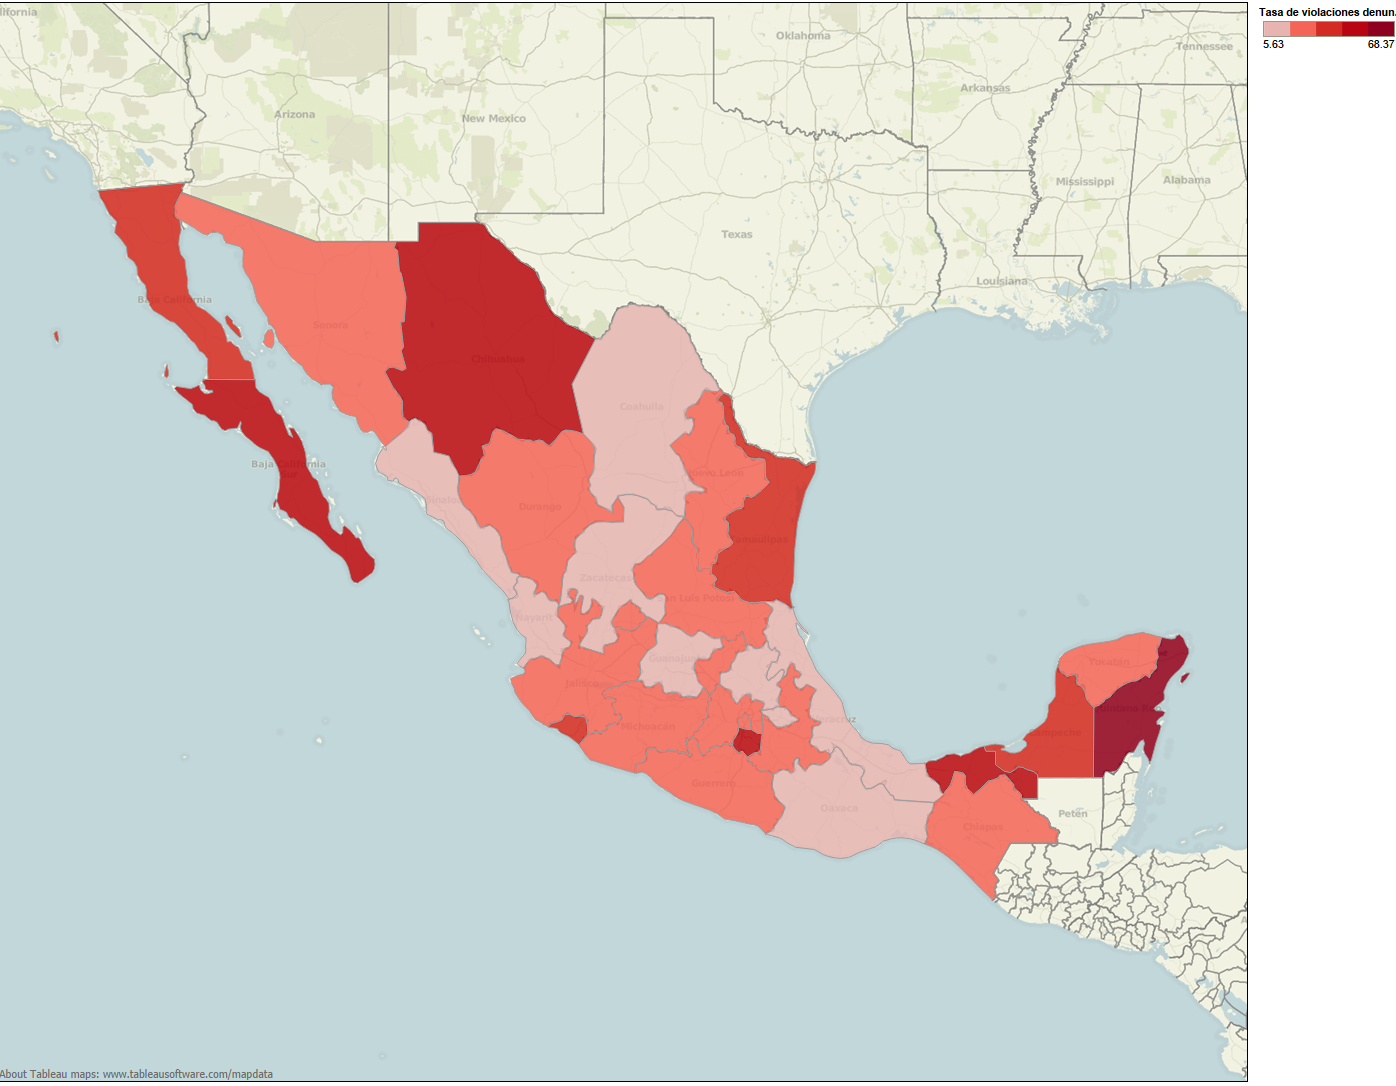 Πατήστε την εικόνα για να δείτε το χάρτη με το ποσοστό δηλωμένων βιασμών ανά 100.000 γυναίκες.